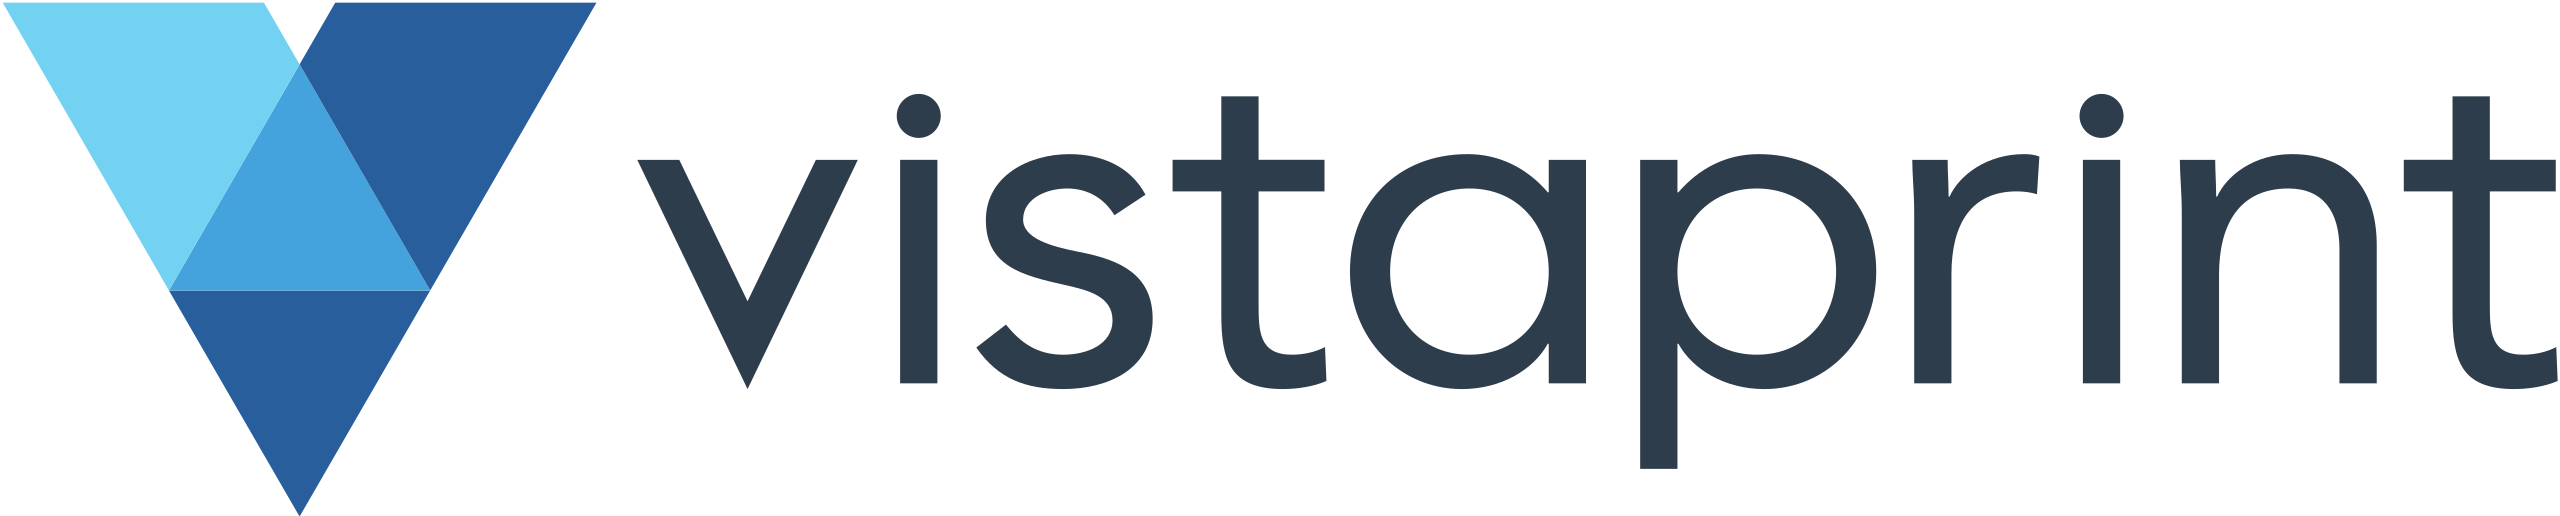 Resources-Software-Tools-Vistaprint-logo